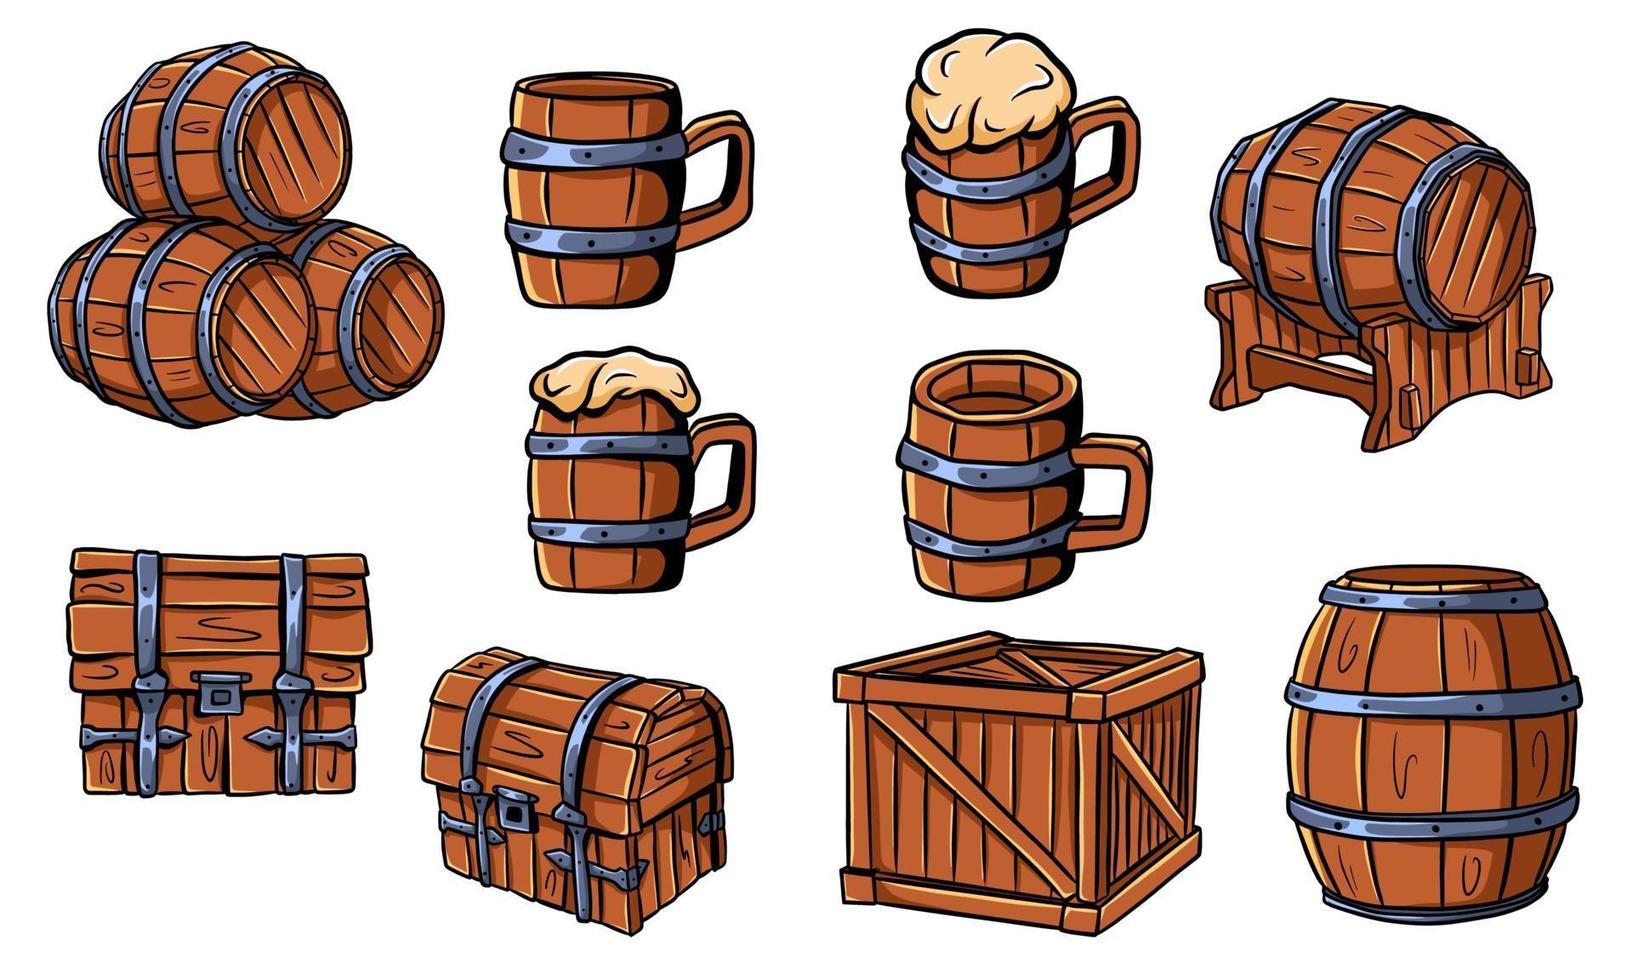 tonneaux en bois, coffres, chopes à bière ou ale. artisanat en bois. boîte. barriques pour le vin. illustration vectorielle isolée. vecteur